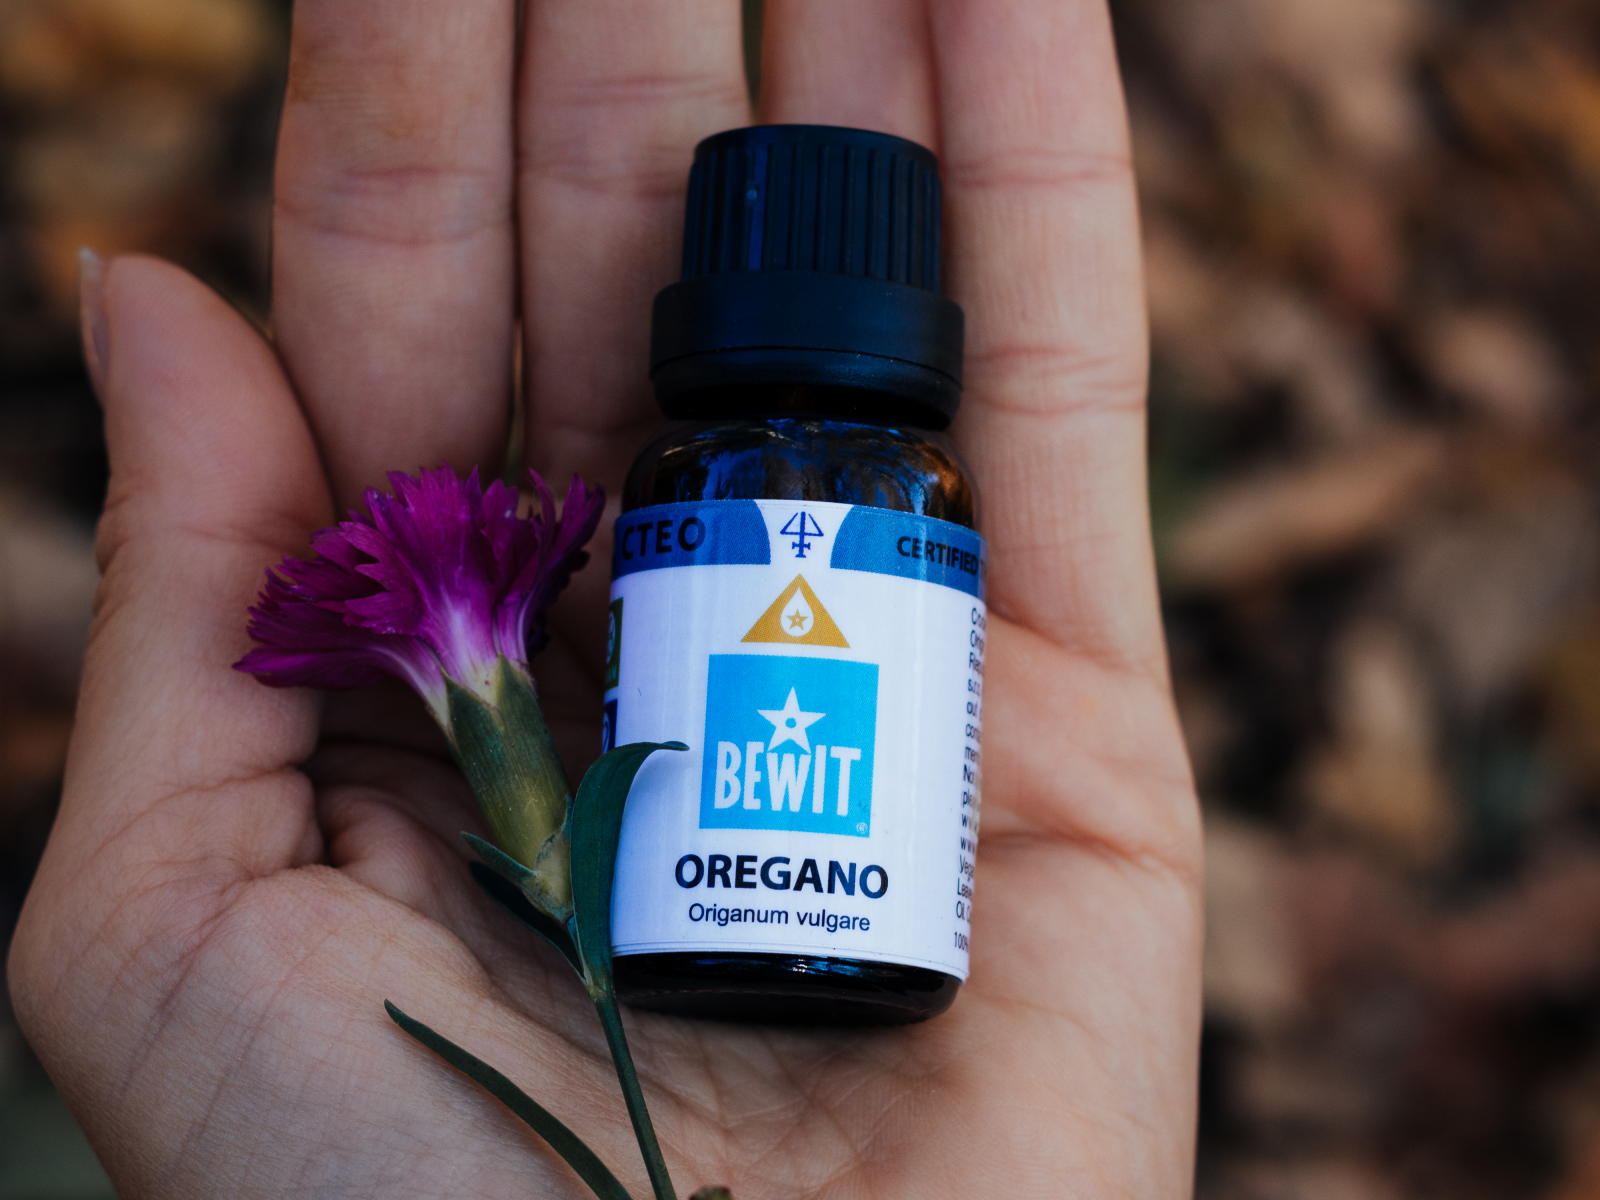 Oregano - It is a 100% pure essential oil - 5